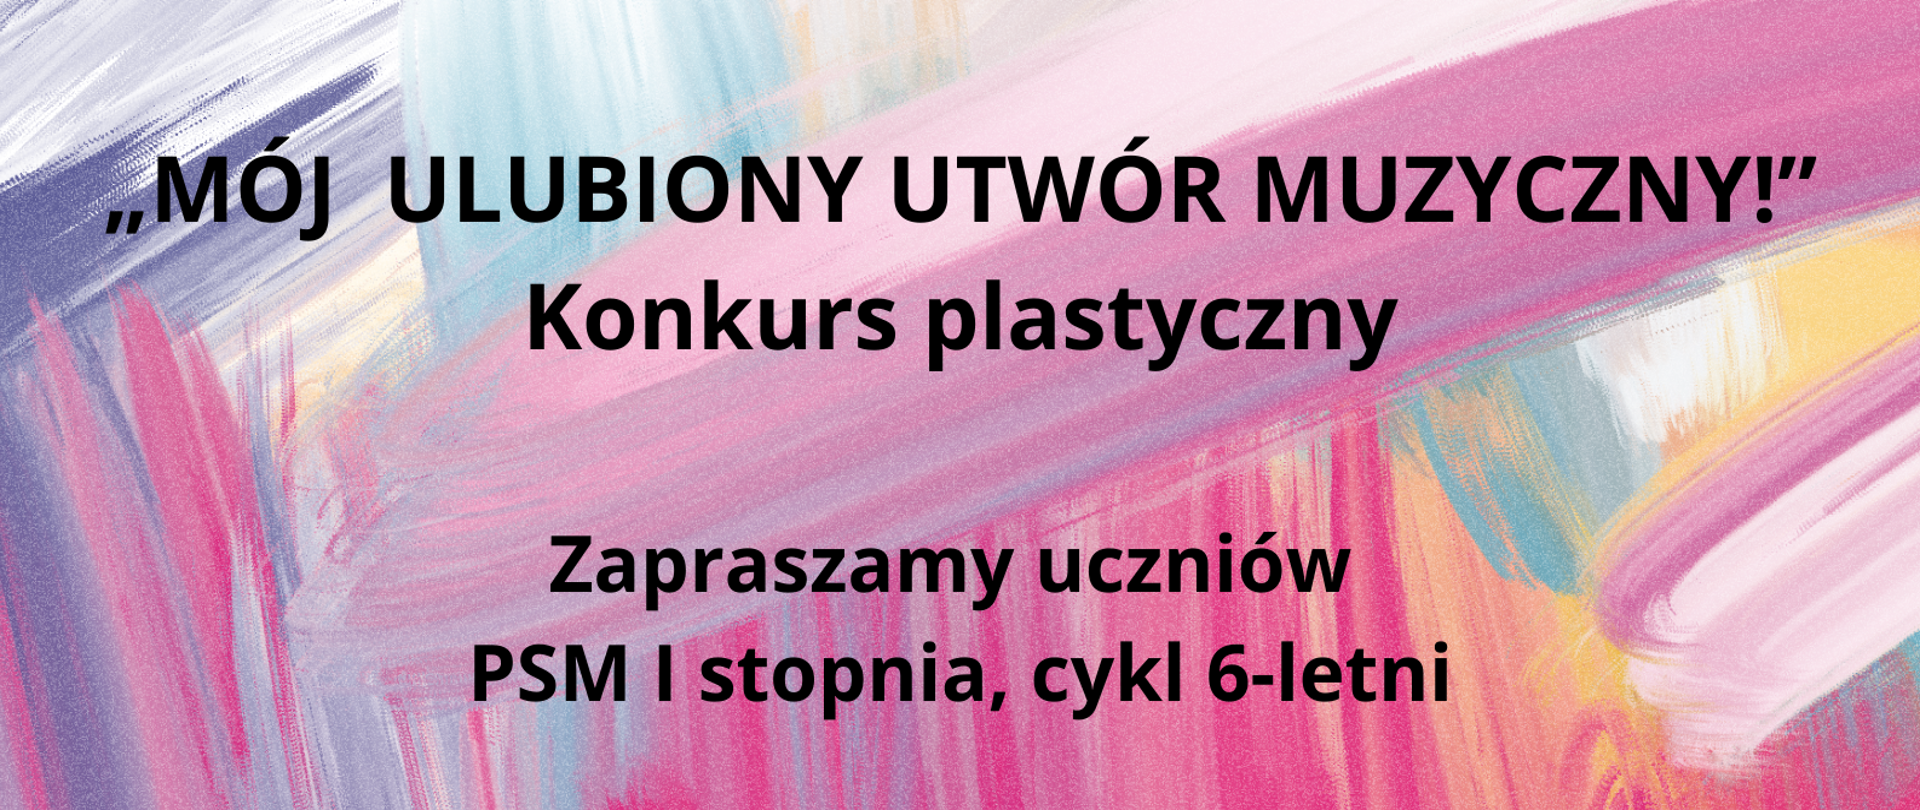 informacje o Konkursie plastycznym "Mój ulubiony utwór muzyczny" zamieszczone na różnokolorowym tle